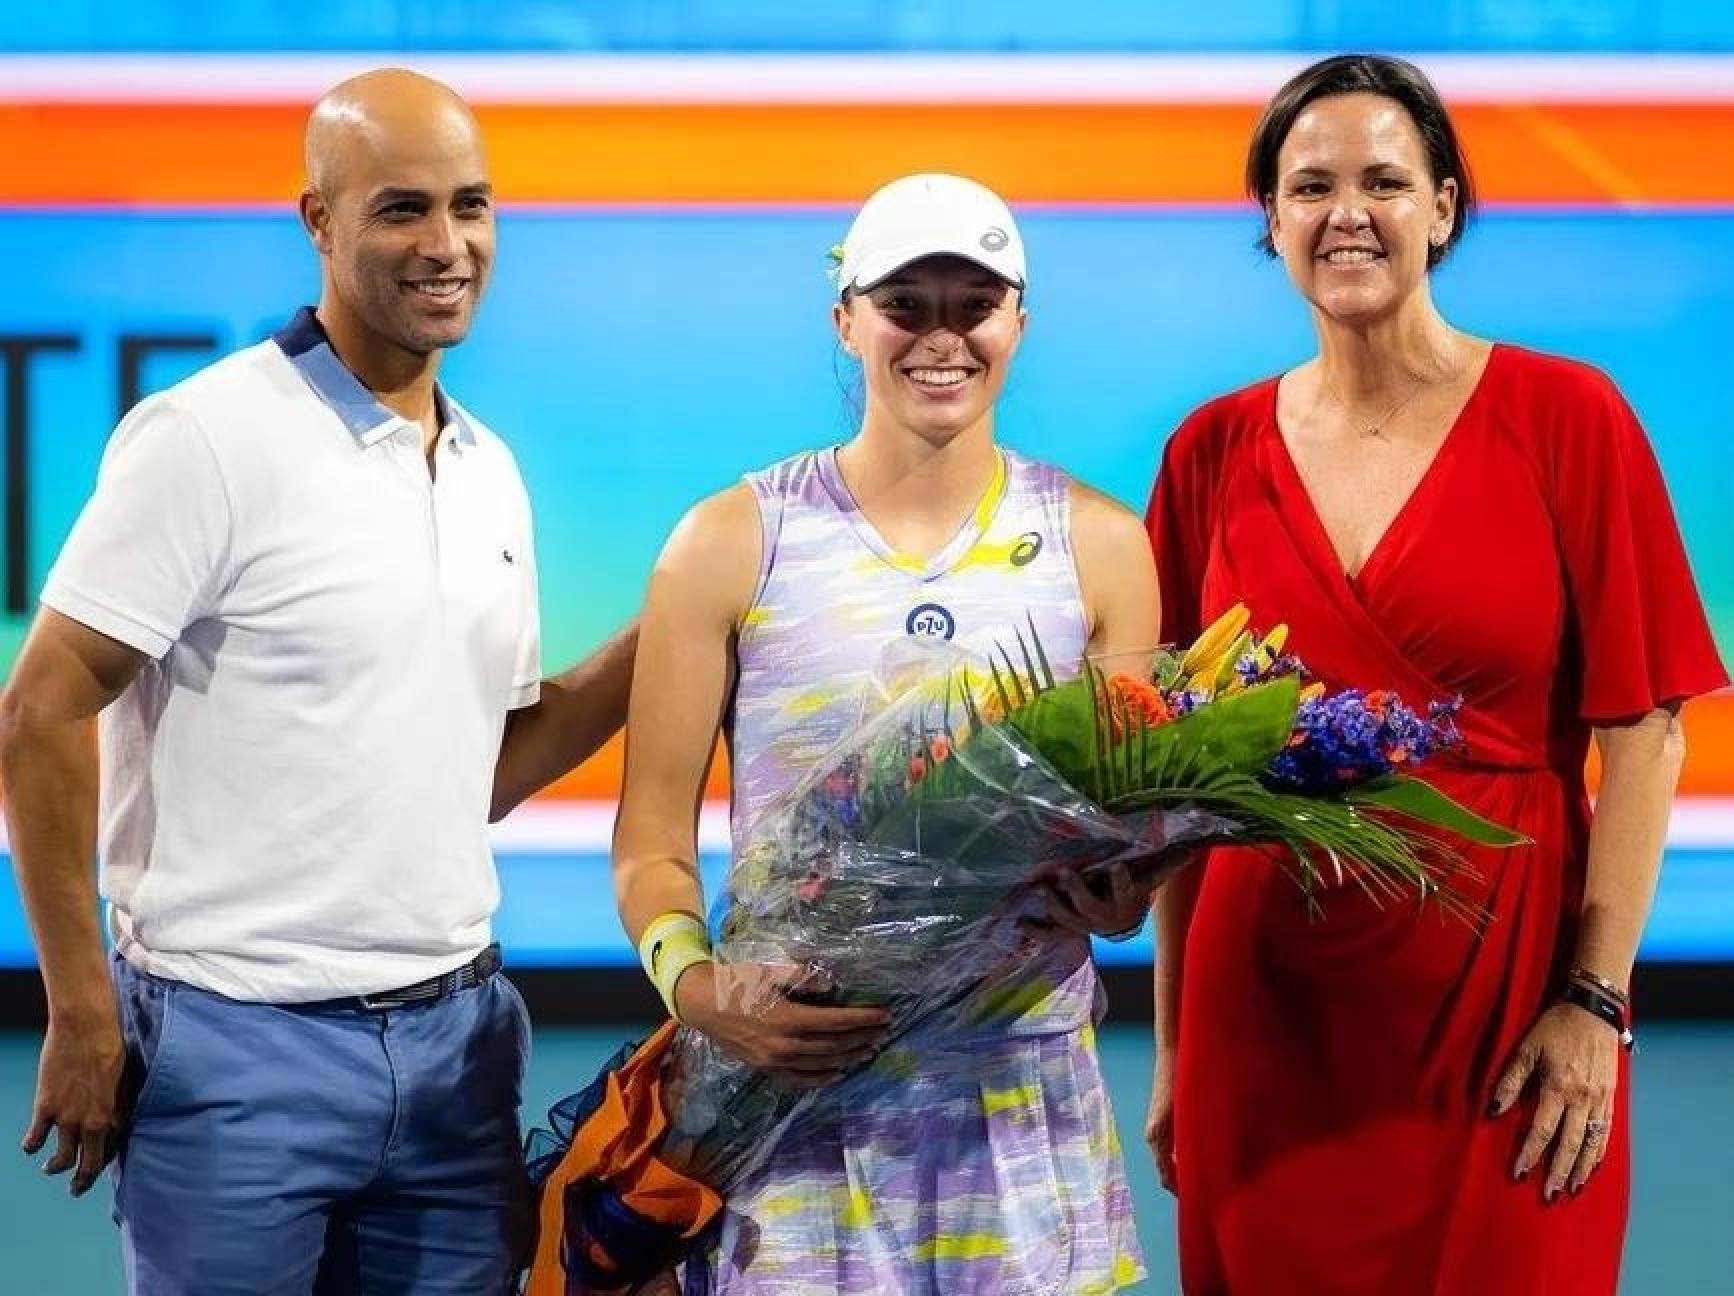 Iga Świątek will take over as world No 1 in women’s tennis. Photo: @iga.swiatek/Instagram